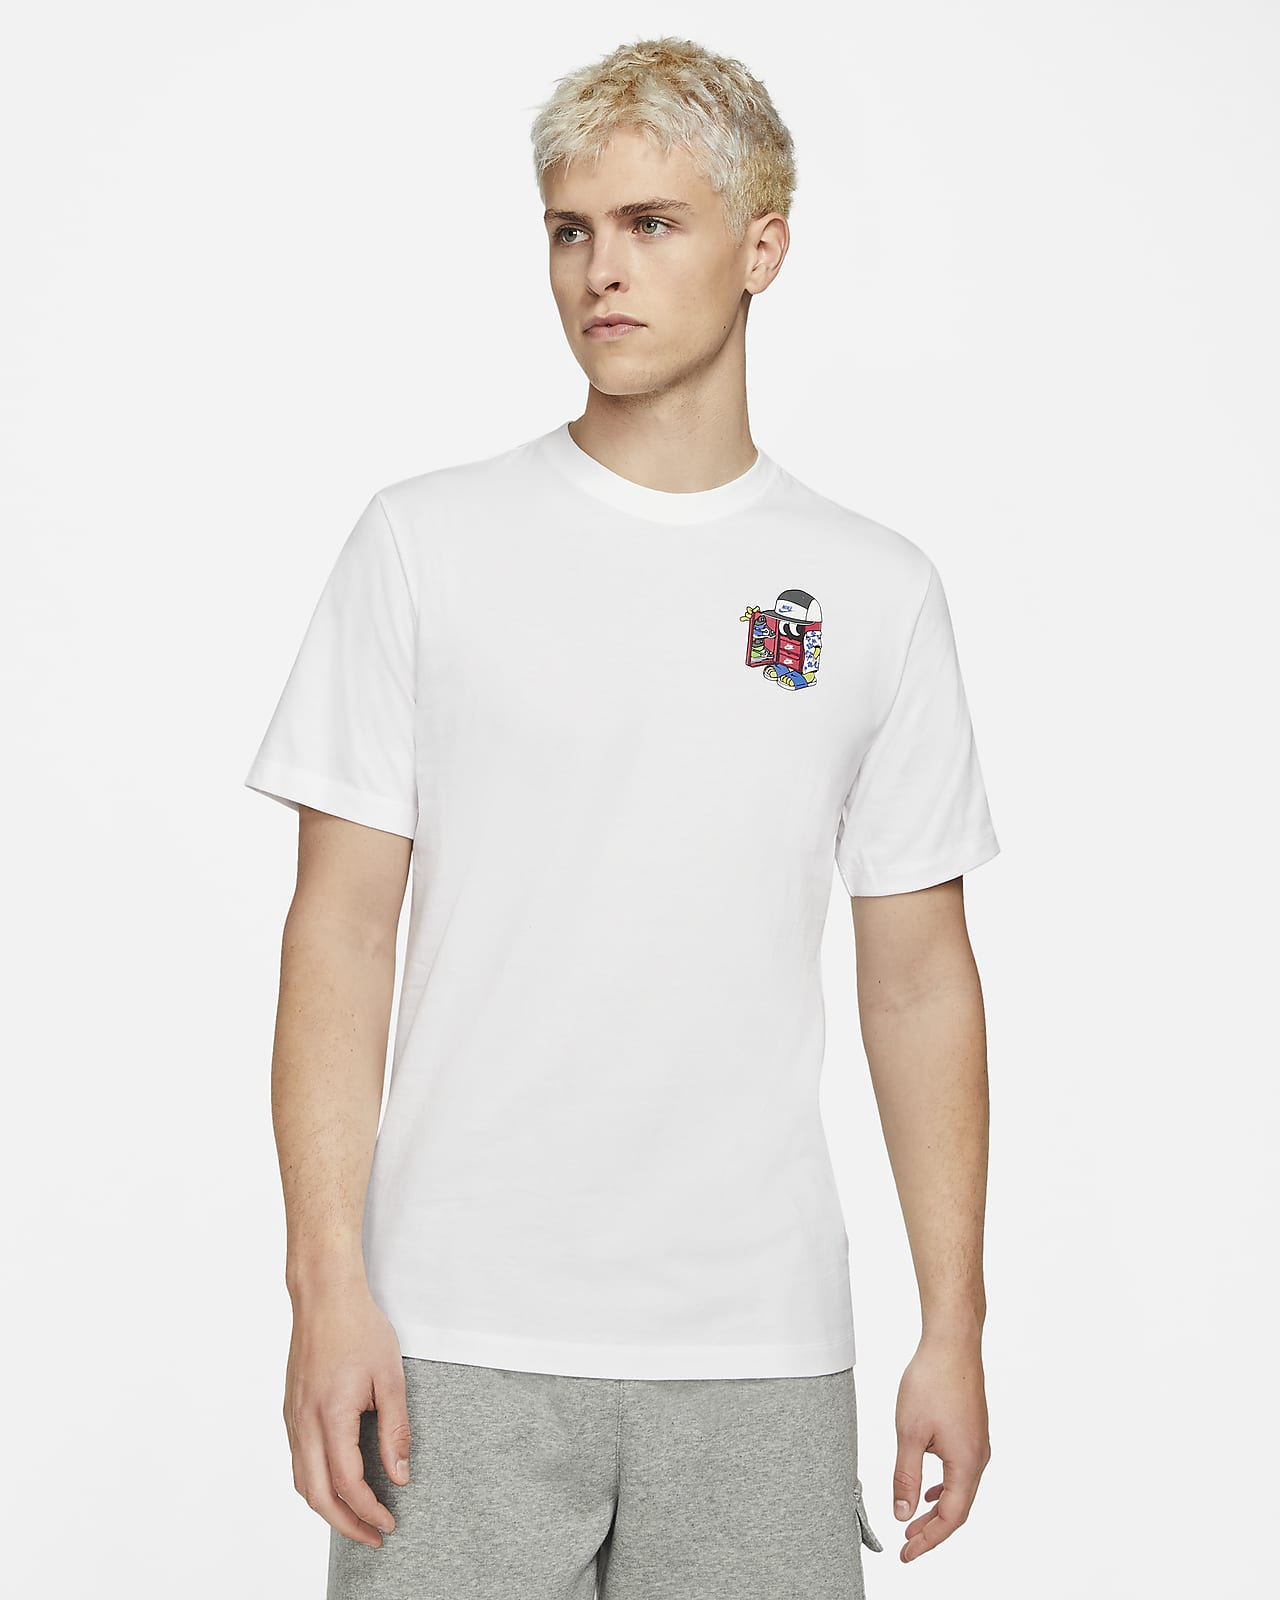 Nike公式 ナイキ スポーツウェア メンズ Tシャツ オンラインストア 通販サイト